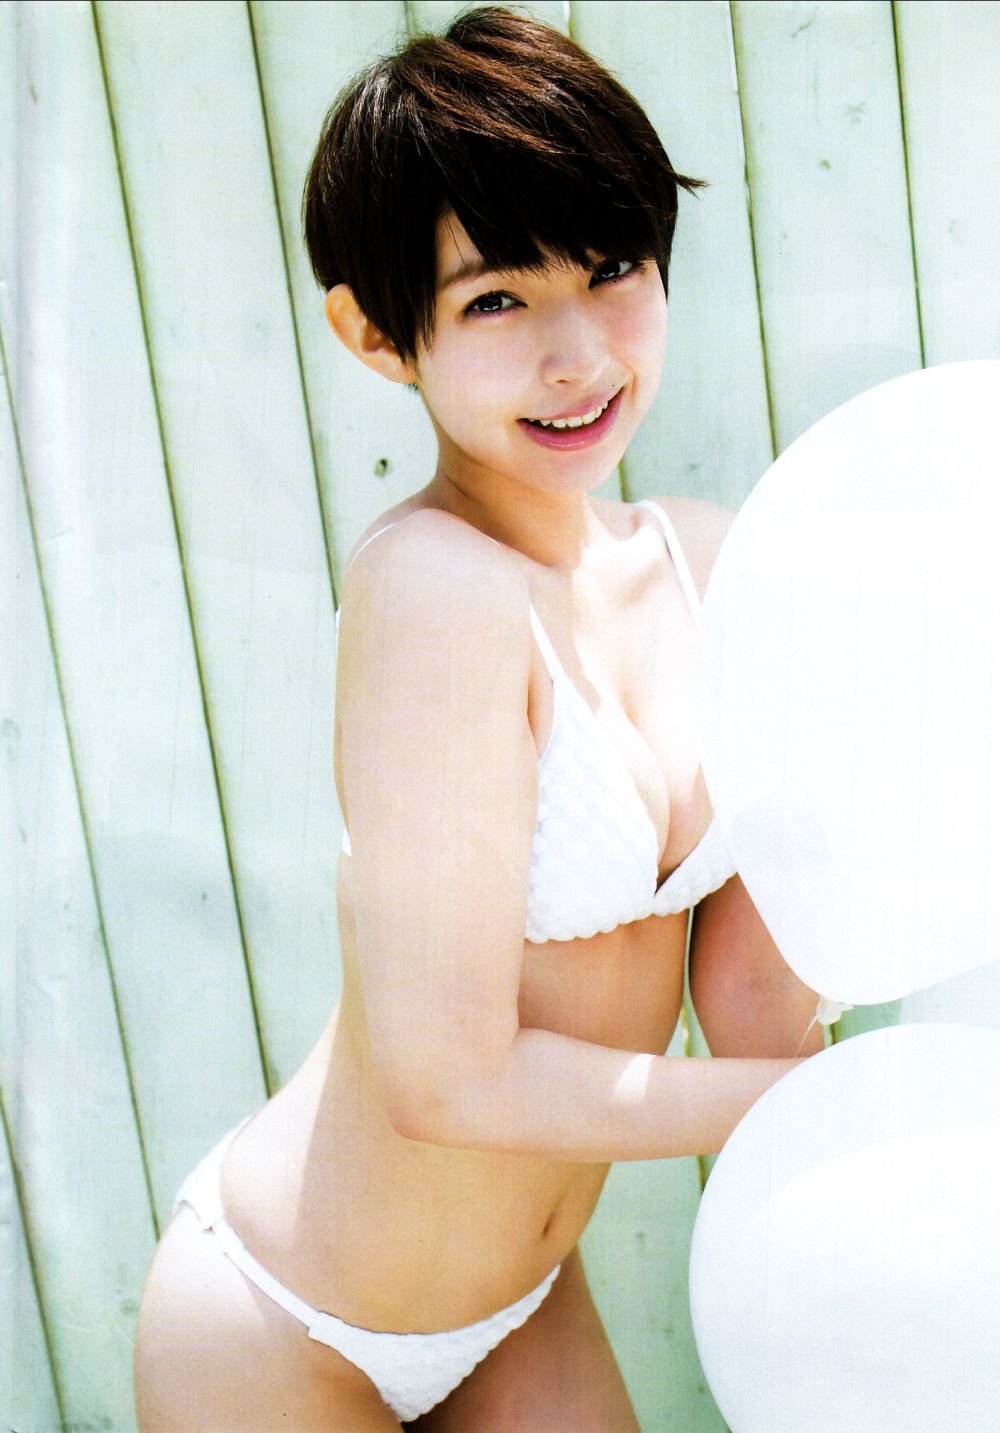 Kyoko Hinami Sexy and Hottest Photos , Latest Pics